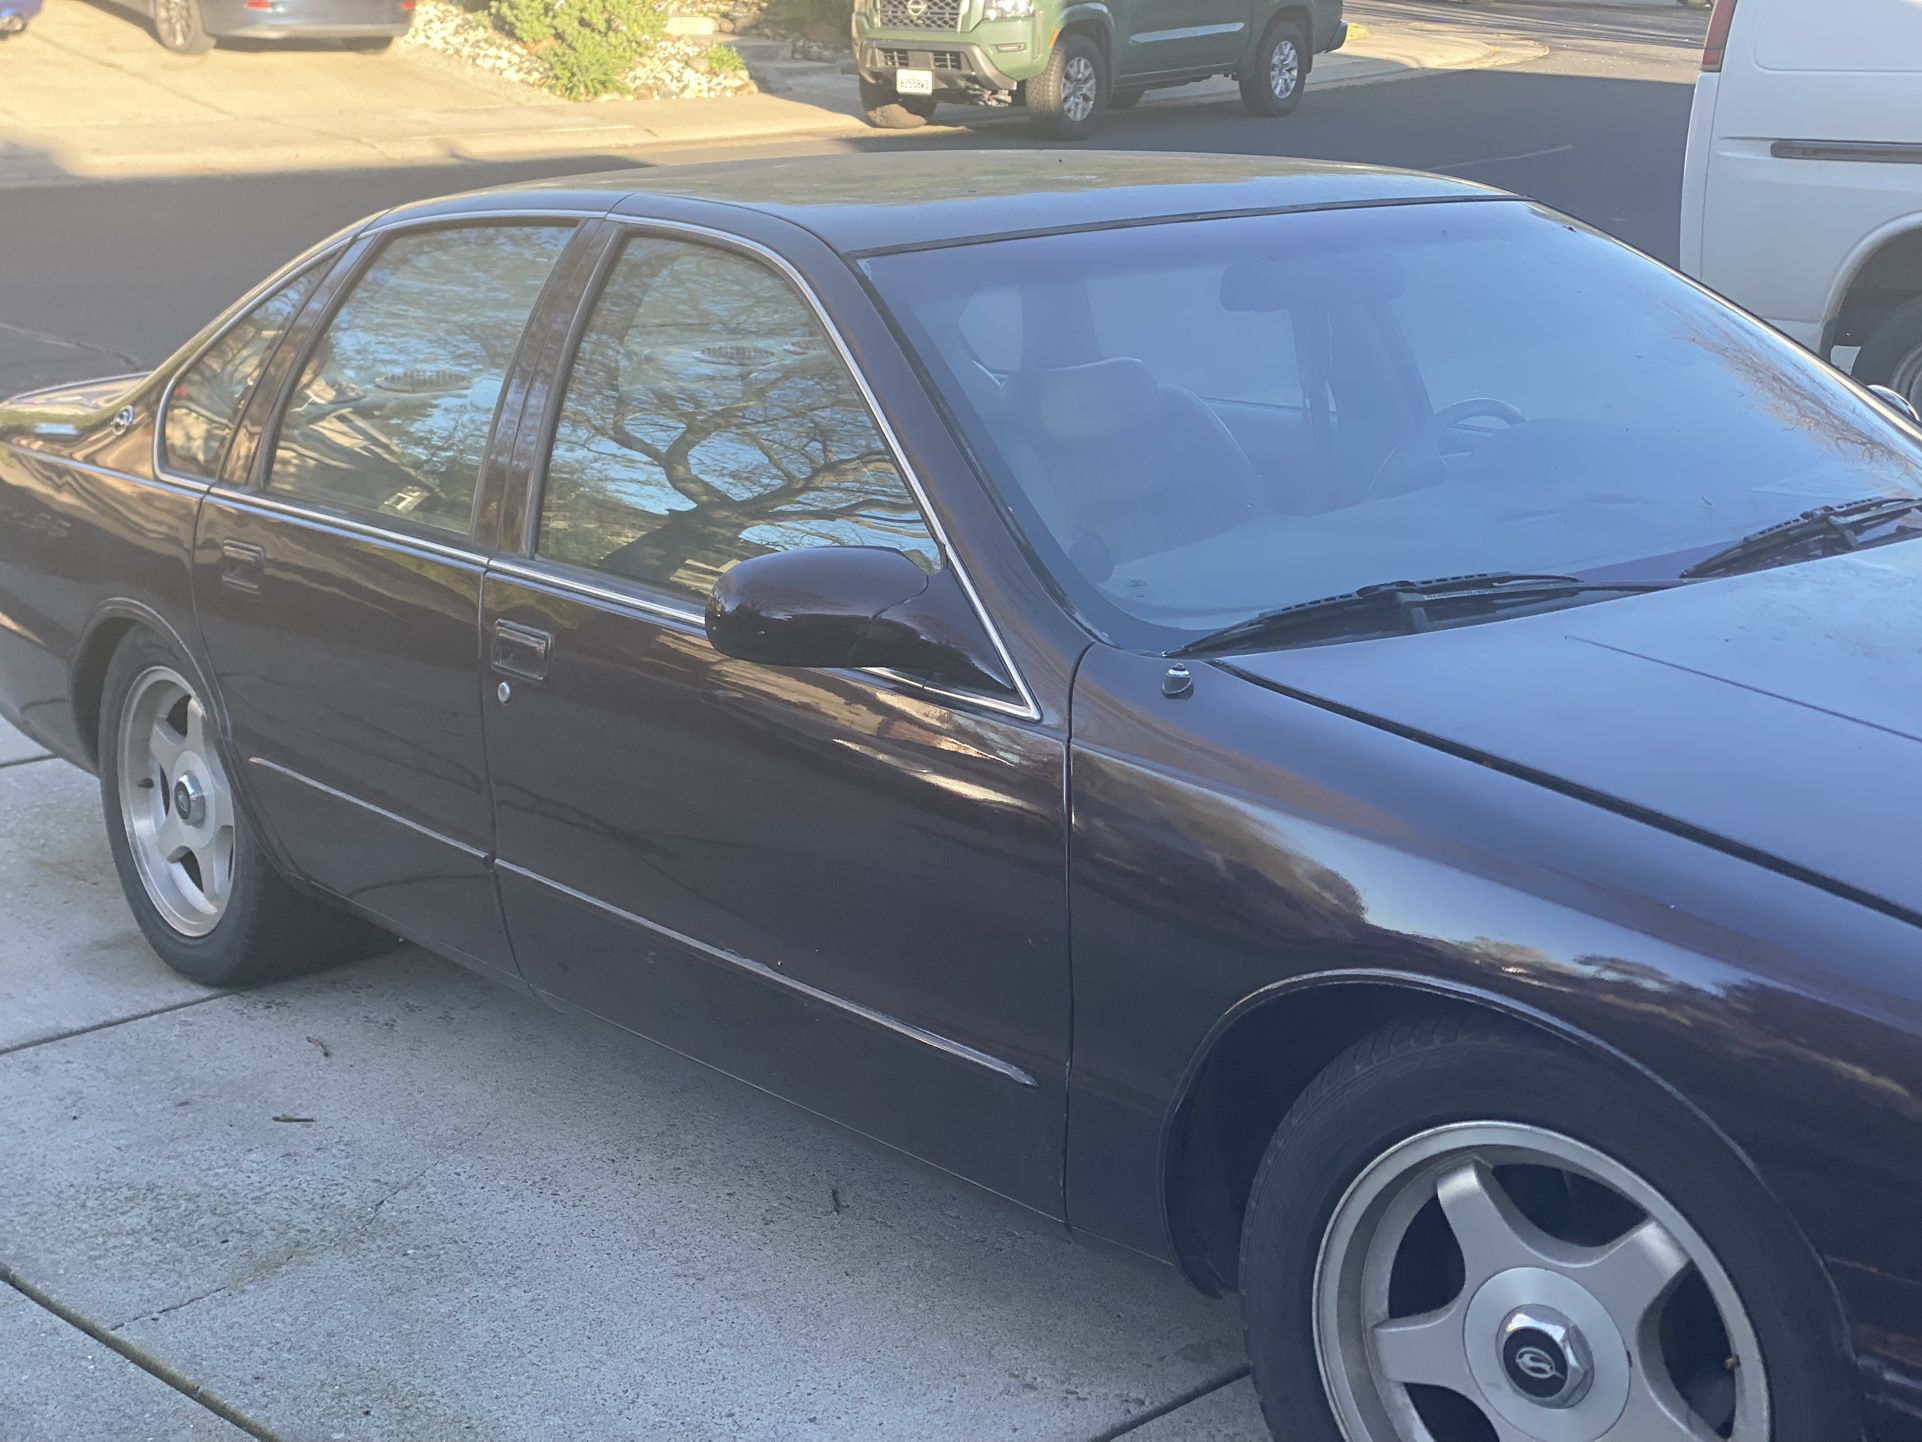 1996 Chevrolet SS Impala (real)